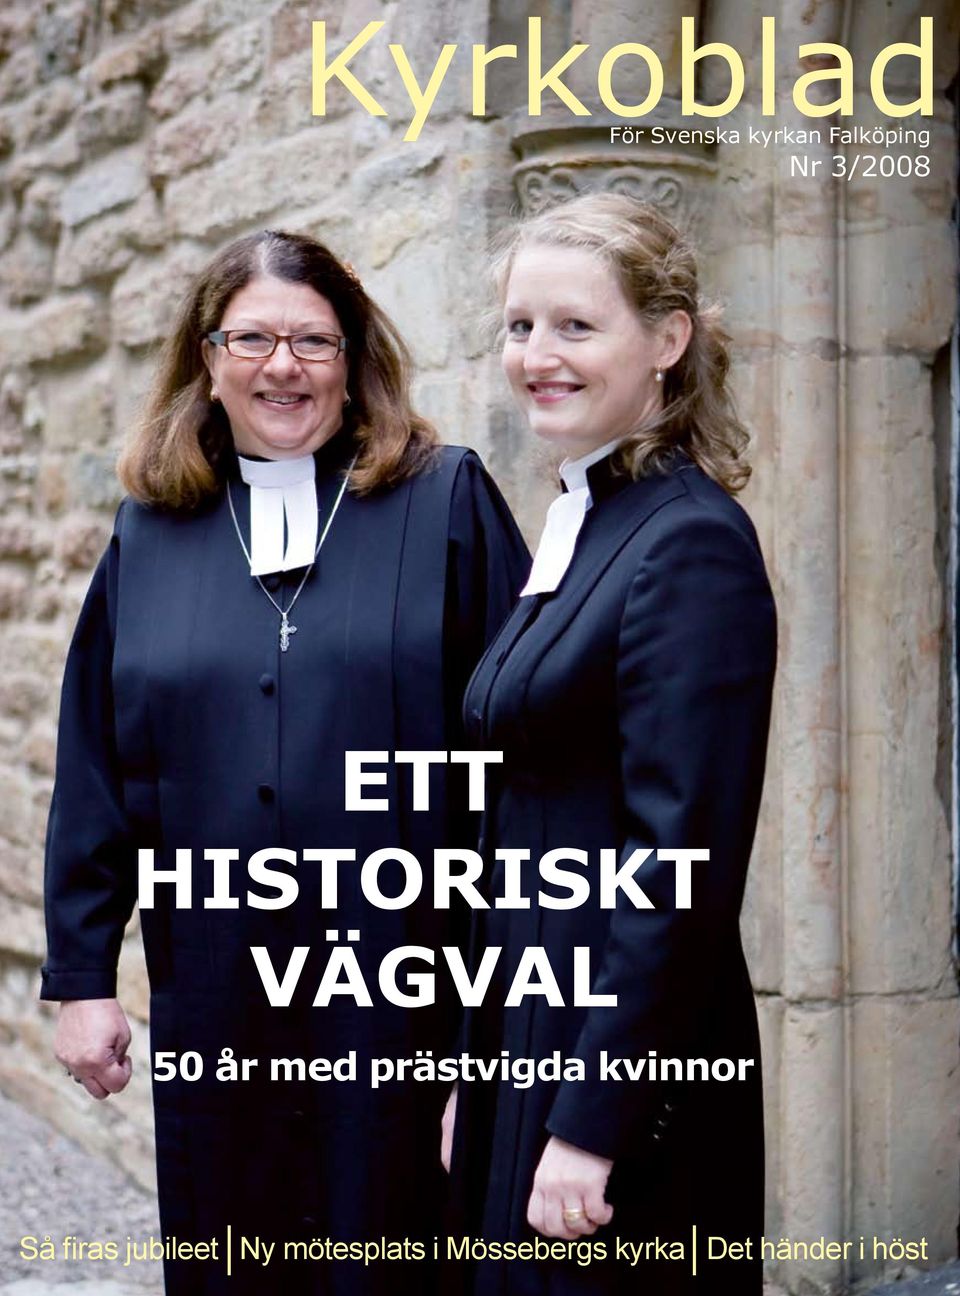 prästvigda kvinnor Så firas jubileet Ny